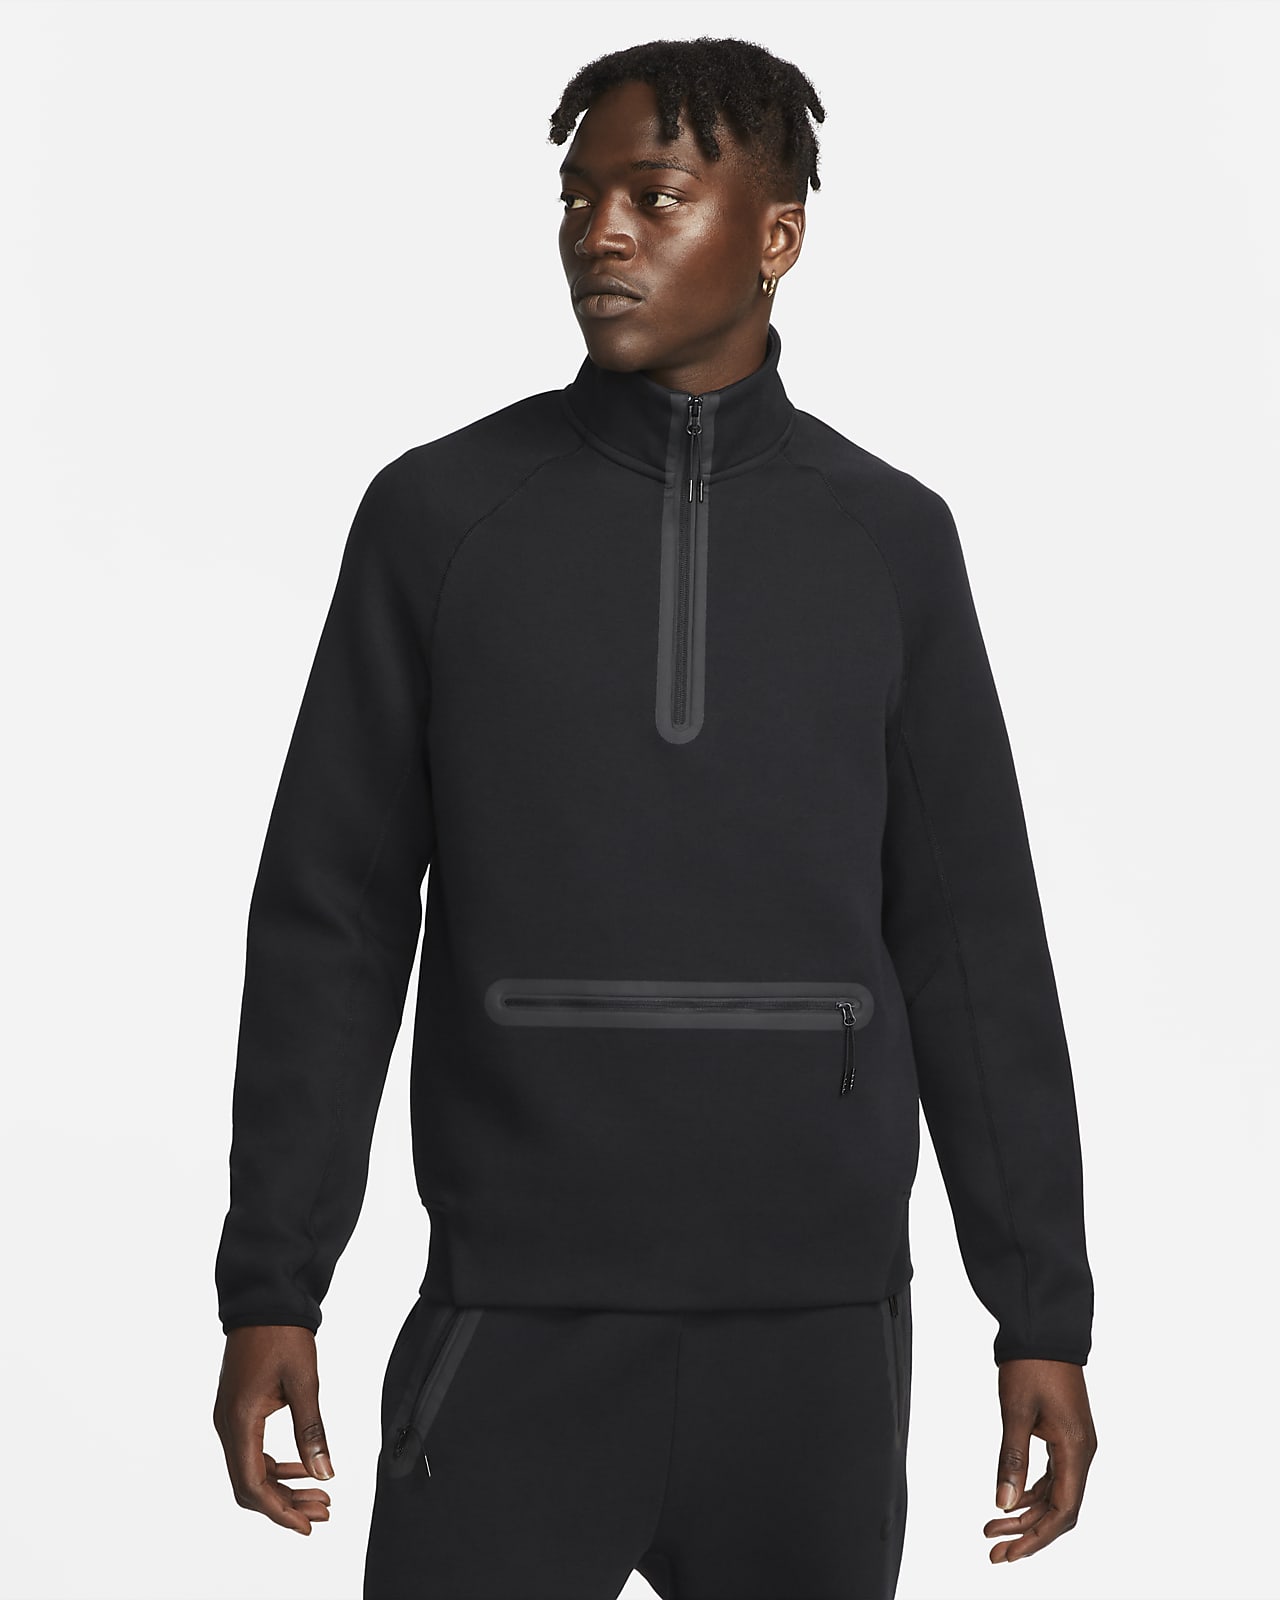 Ανδρικό φούτερ με φερμουάρ στο μισό μήκος Nike Sportswear Tech Fleece